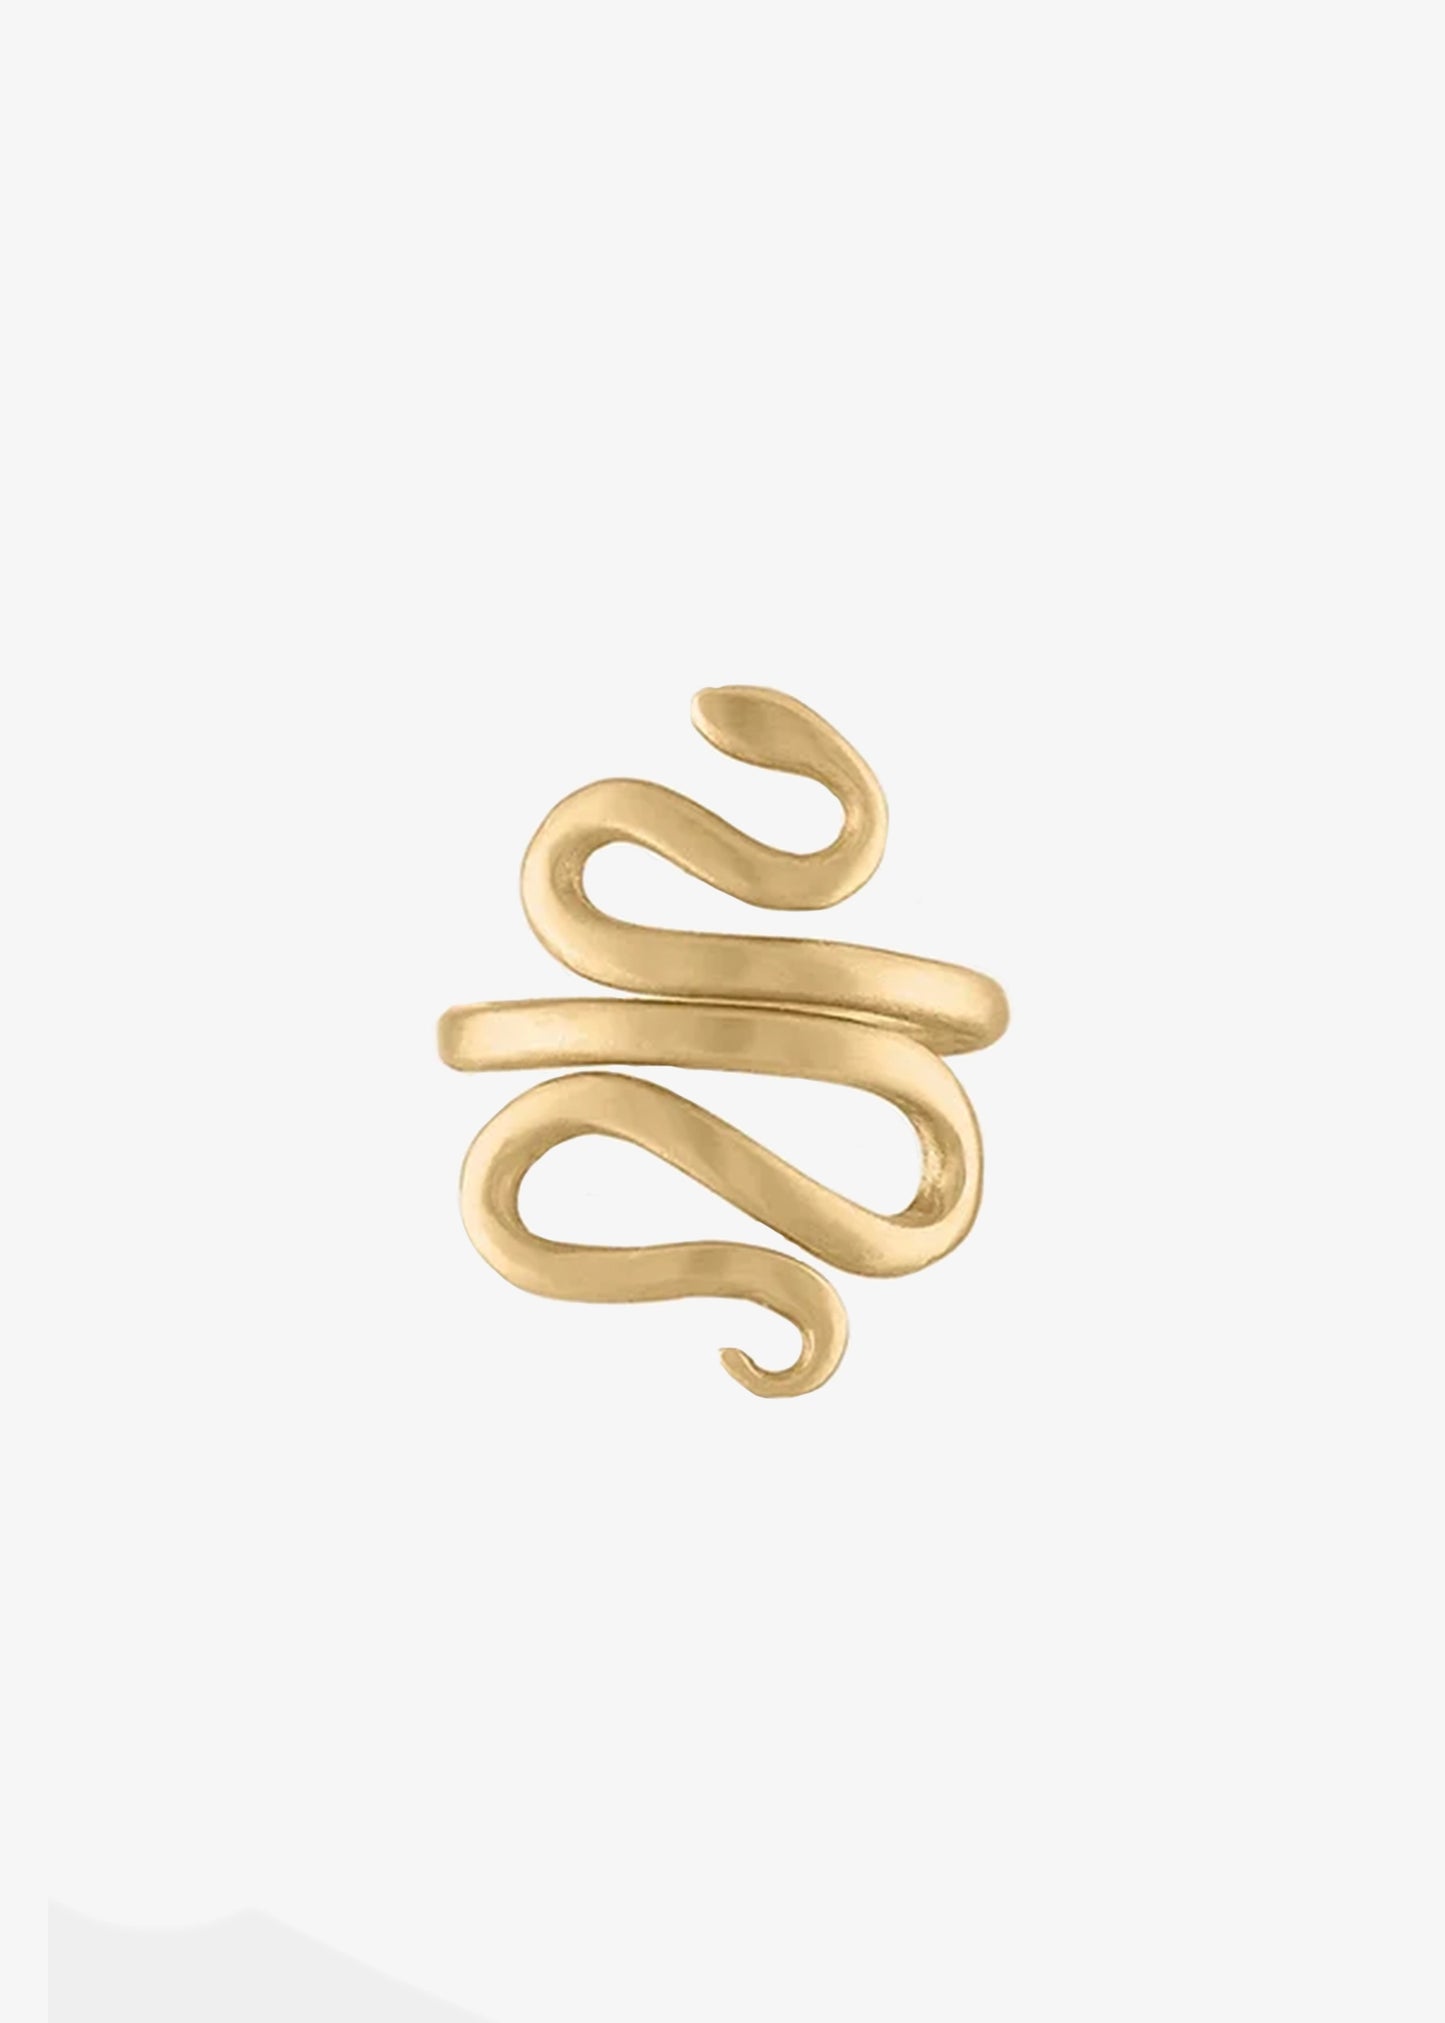 Asia Ingalls Gold Snake Ring 10K